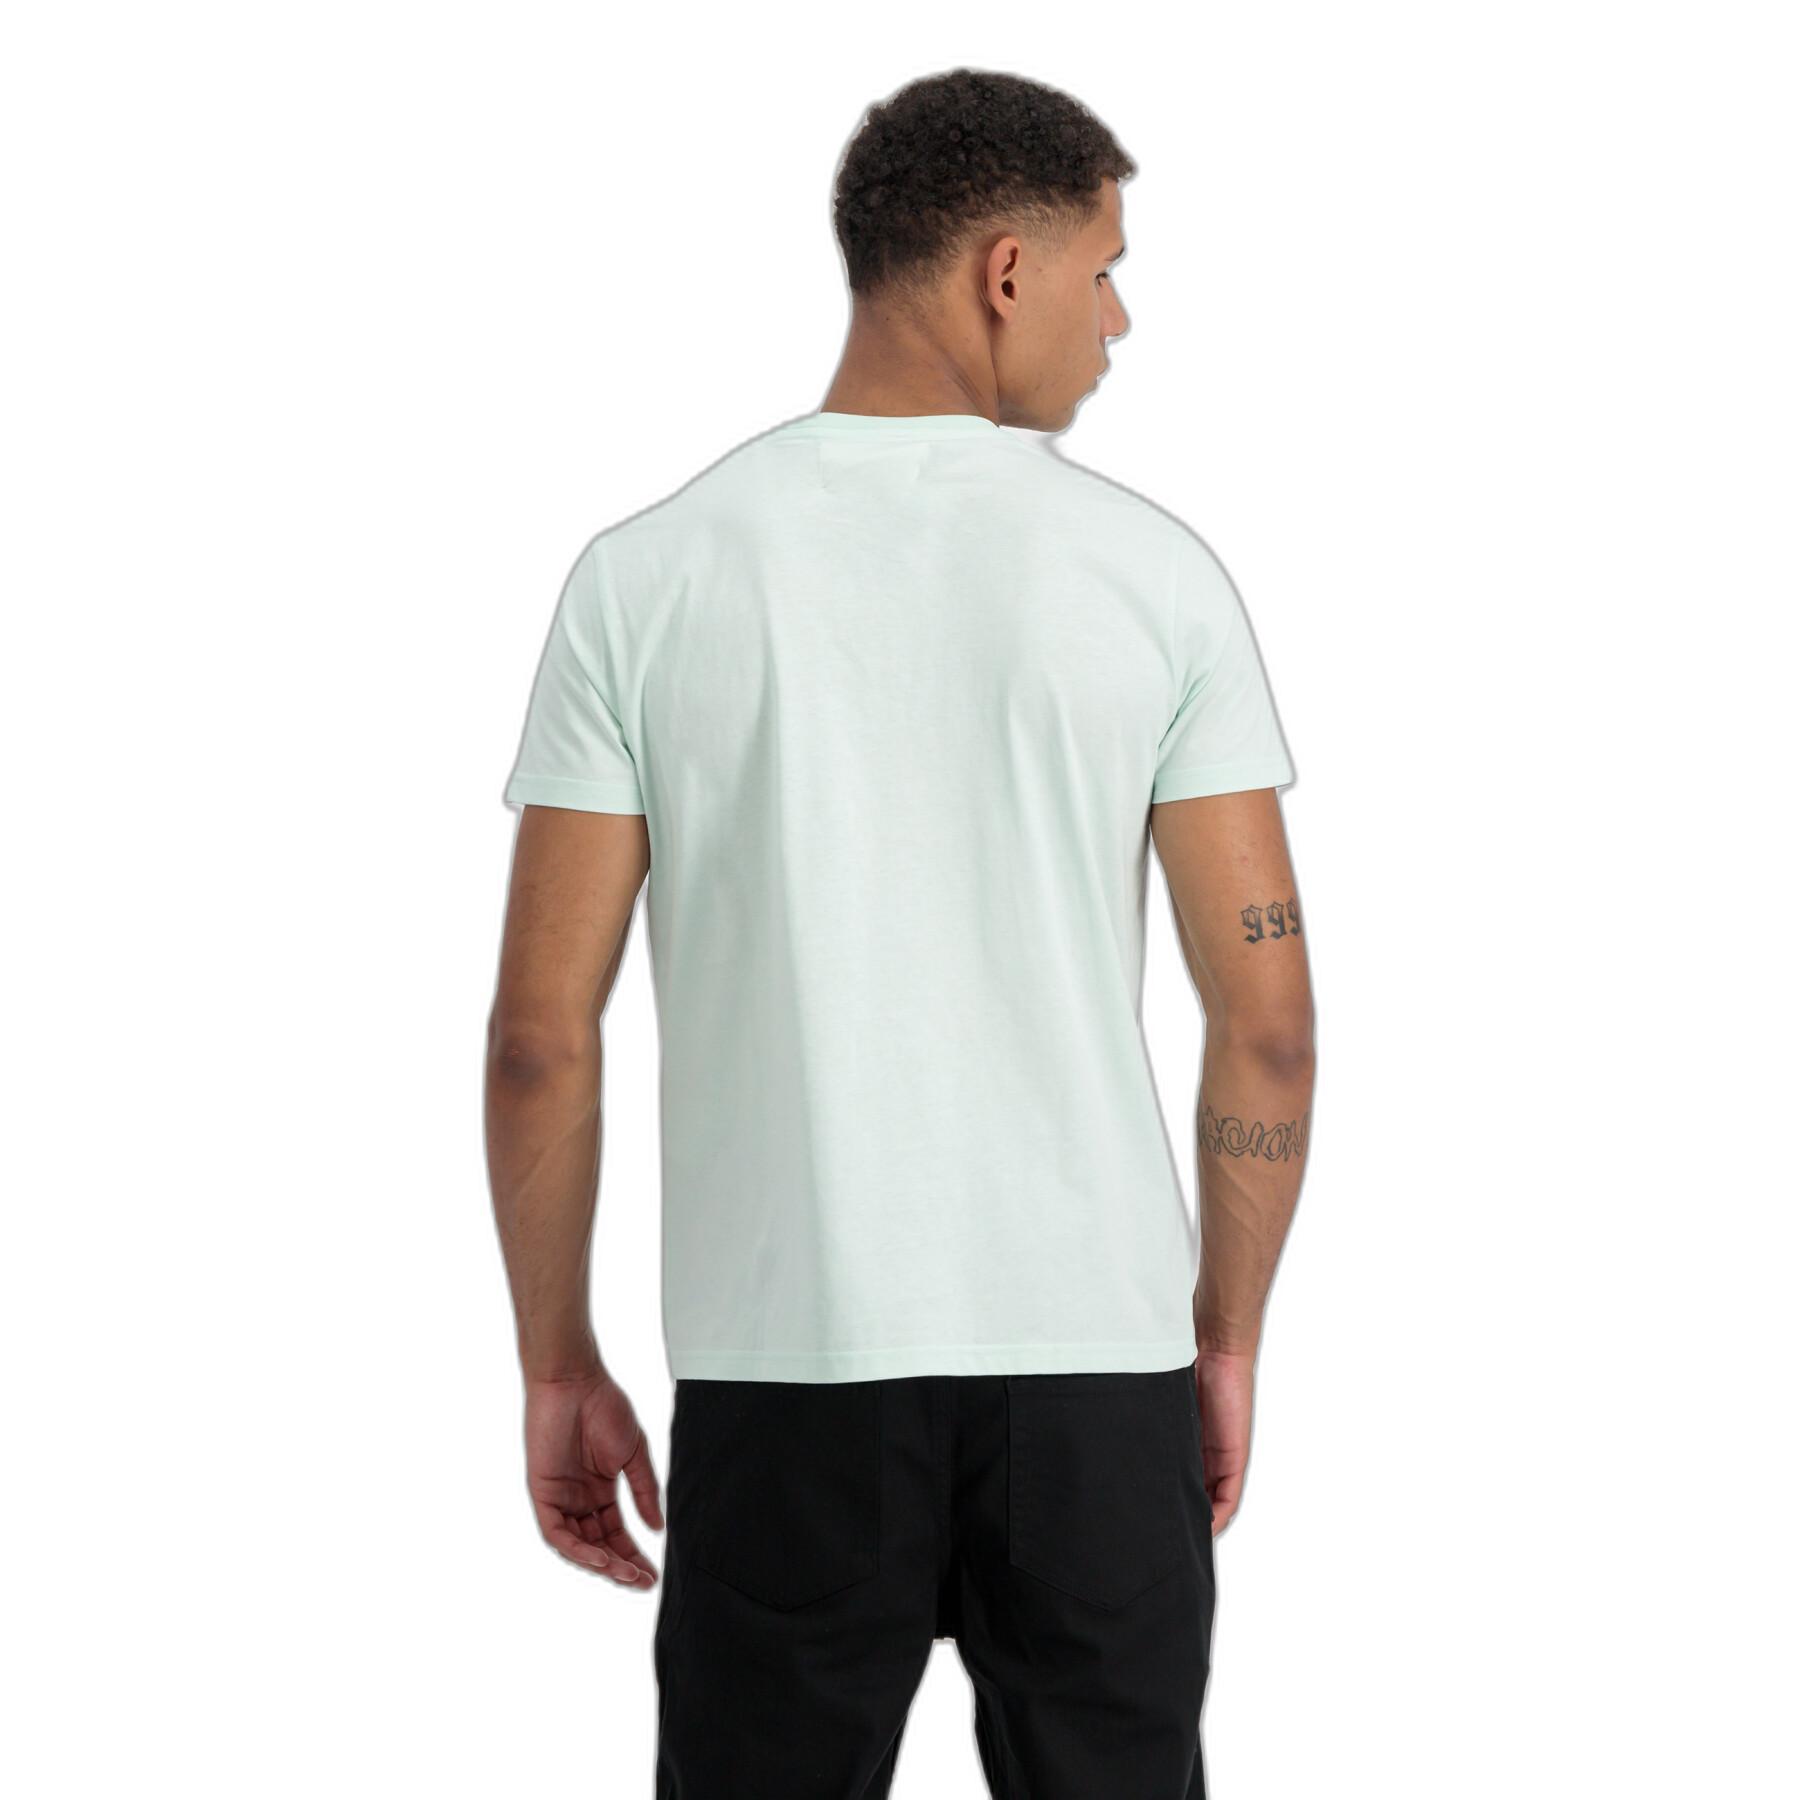 T-shirt Industries EMB - Organics Alpha T-Shirts Streetwear Men - -